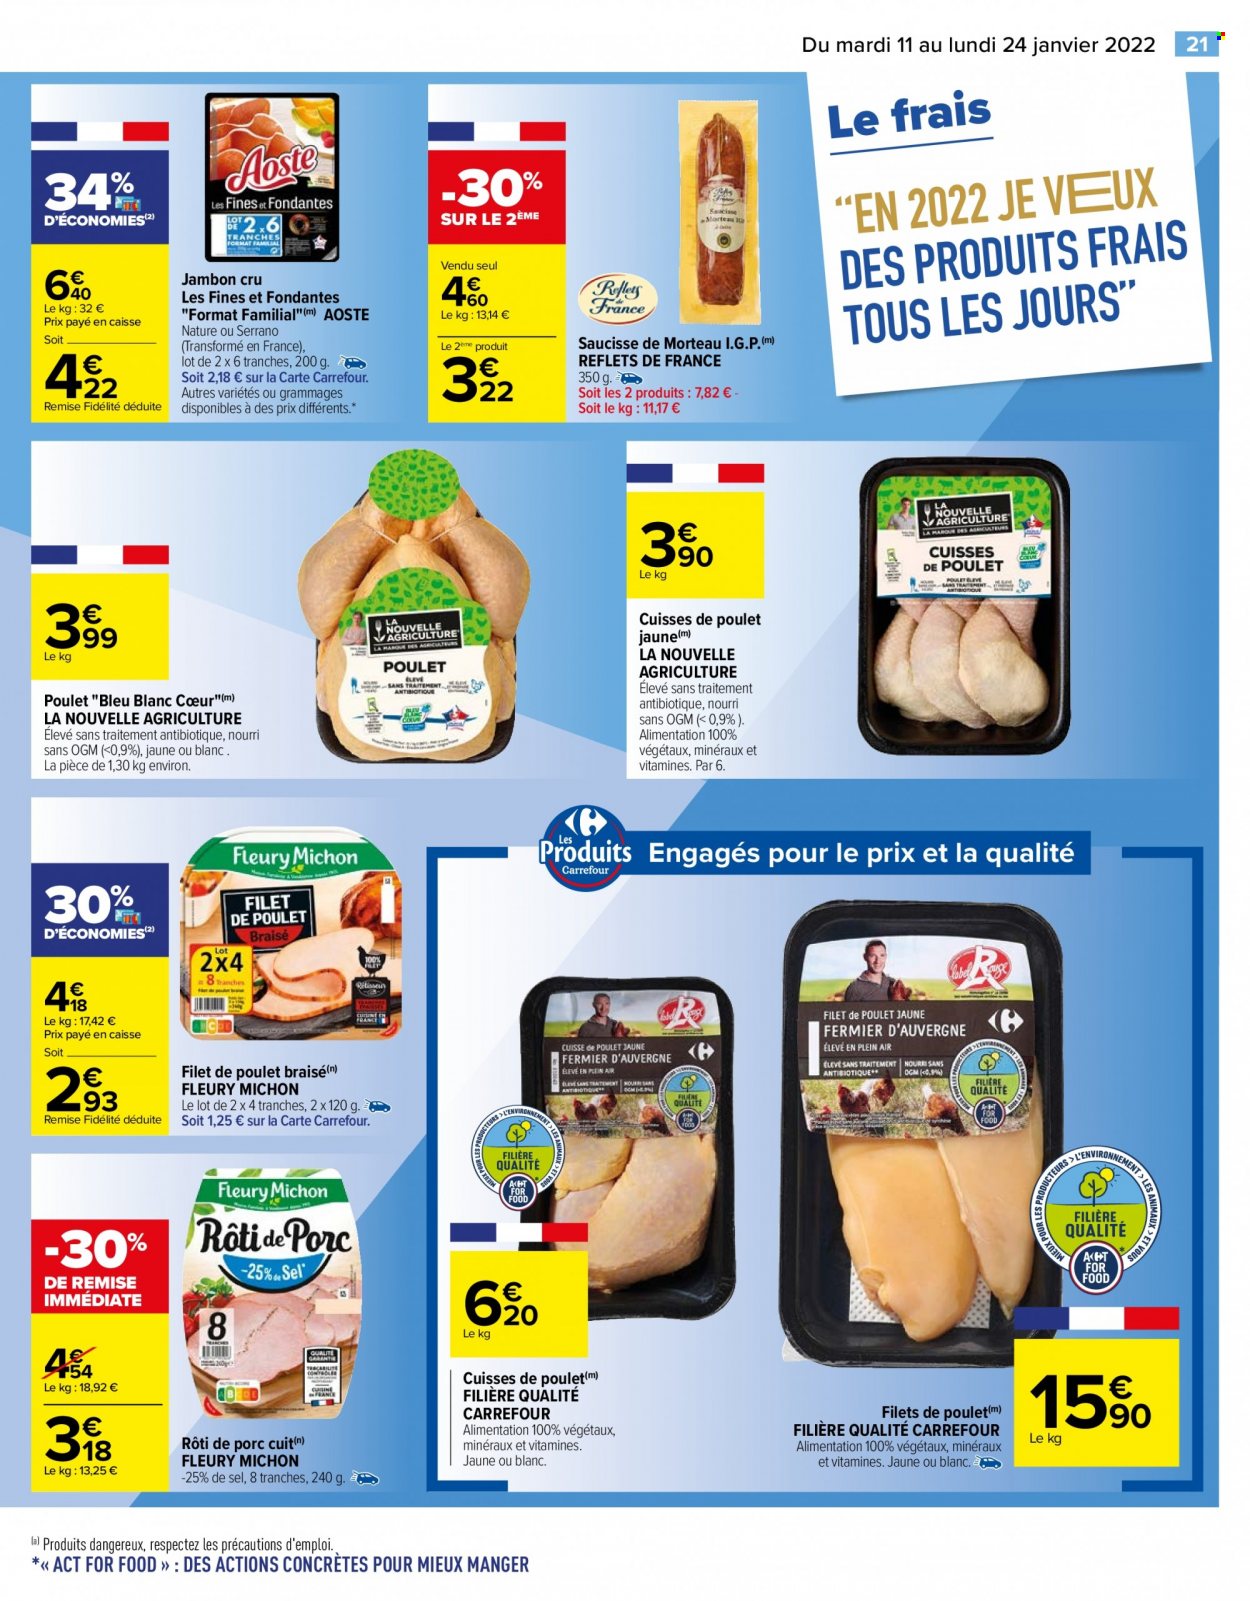 thumbnail - Catalogue Carrefour Hypermarchés - 11/01/2022 - 24/01/2022 - Produits soldés - rôti de porc, viande de porc, filet de poulet, cuisses de poulet, viande de poulet, Fleury Michon, jambon, jambon sec, Aoste, saucisse. Page 21.